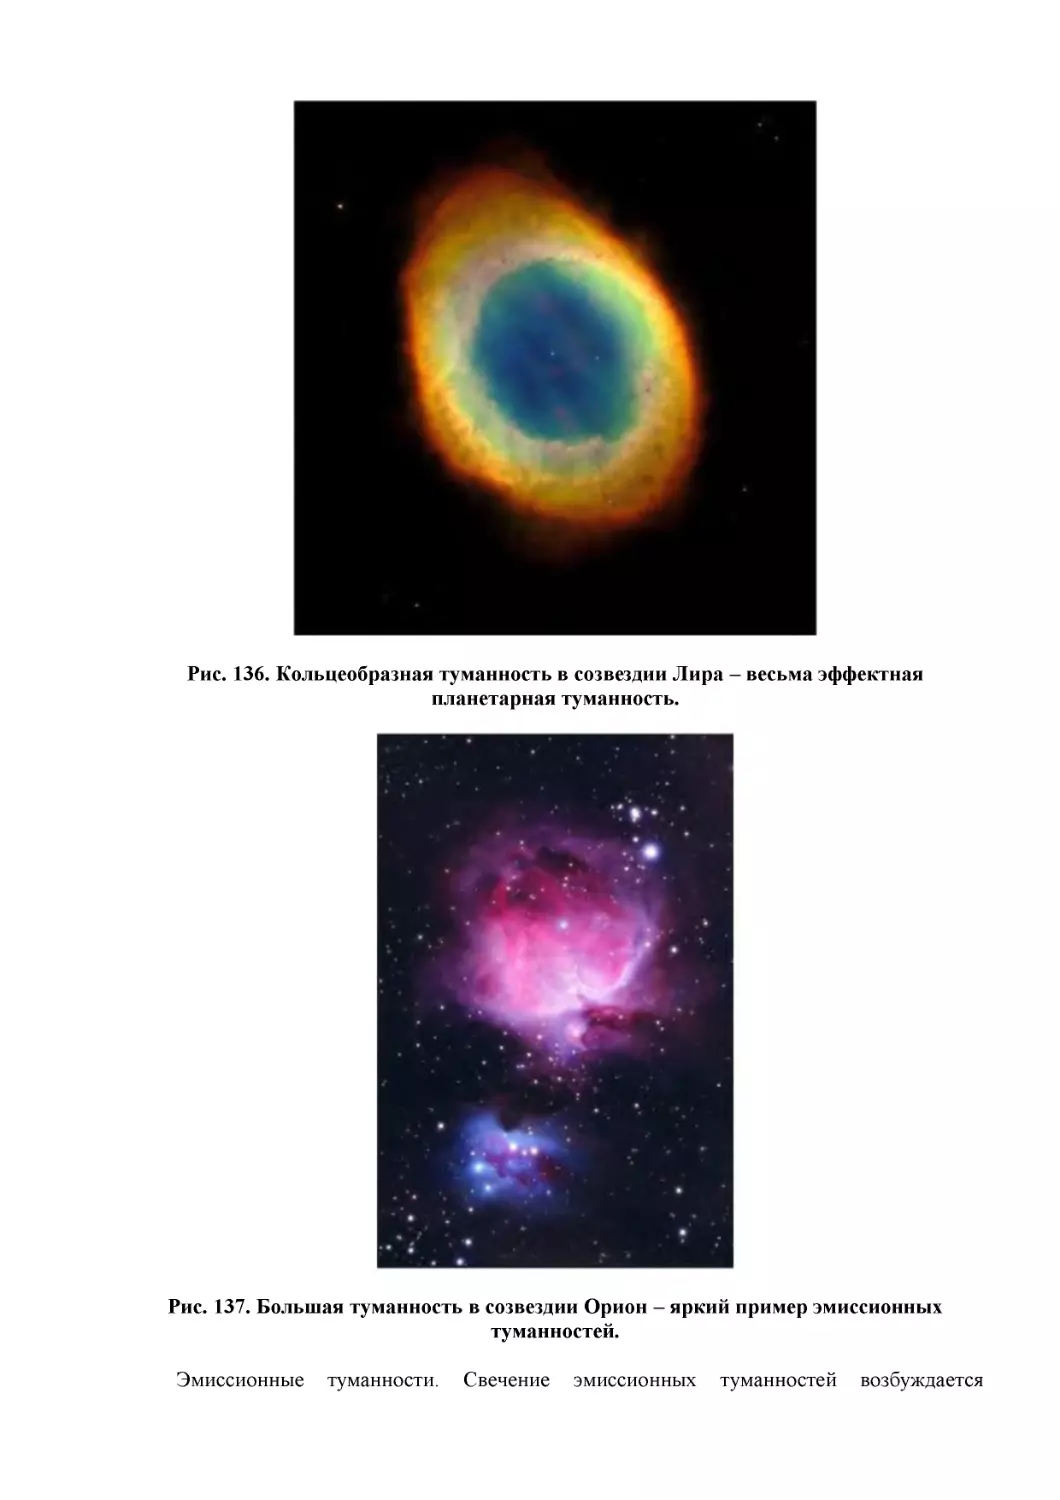 Рис. 136. Кольцеобразная туманность в созвездии Лира – весьма эффектная планетарная туманность.
Рис. 137. Большая туманность в созвездии Орион – яркий пример эмиссионных туманностей.